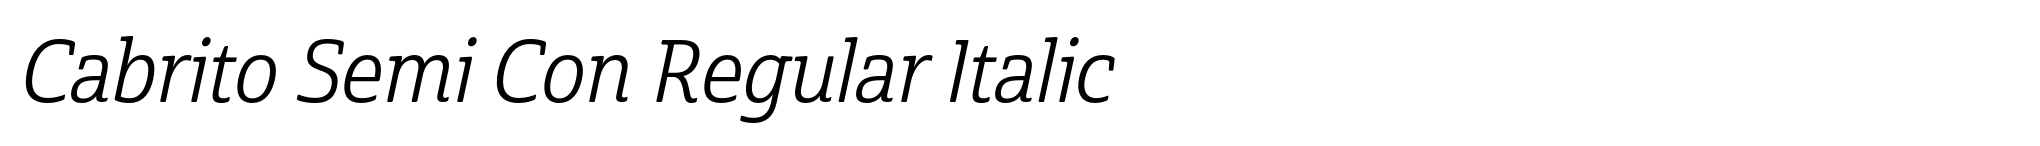 Cabrito Semi Con Regular Italic image